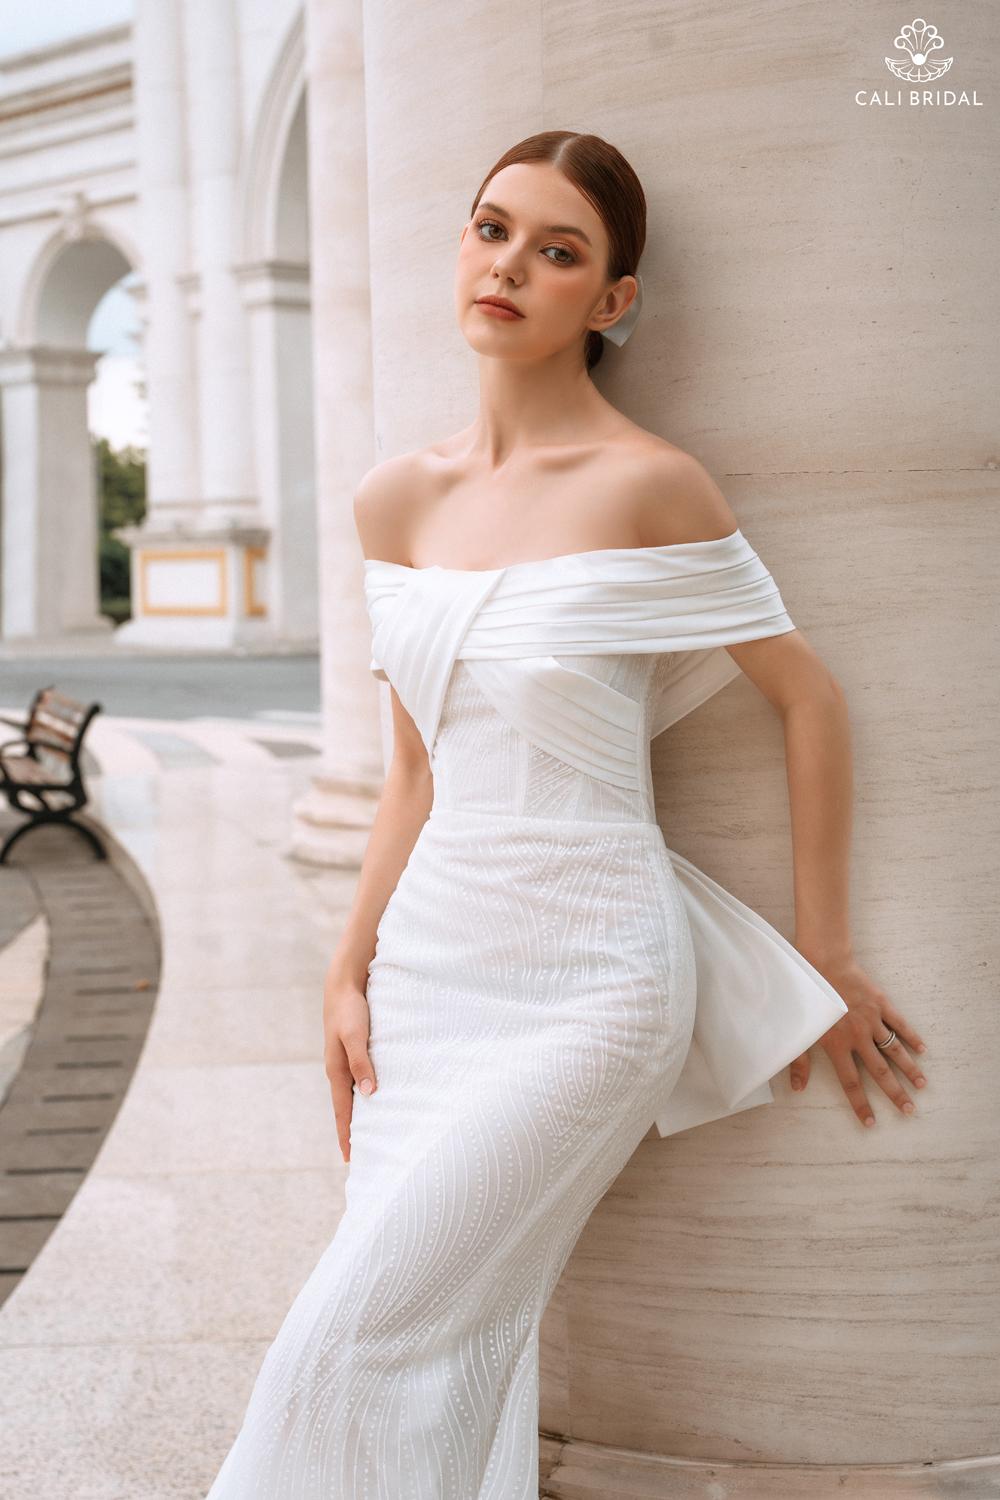 Cali Bridal ra mắt BST “Perfectly Elegant” với hơn 400 mẫu váy cưới độc đáo - 3